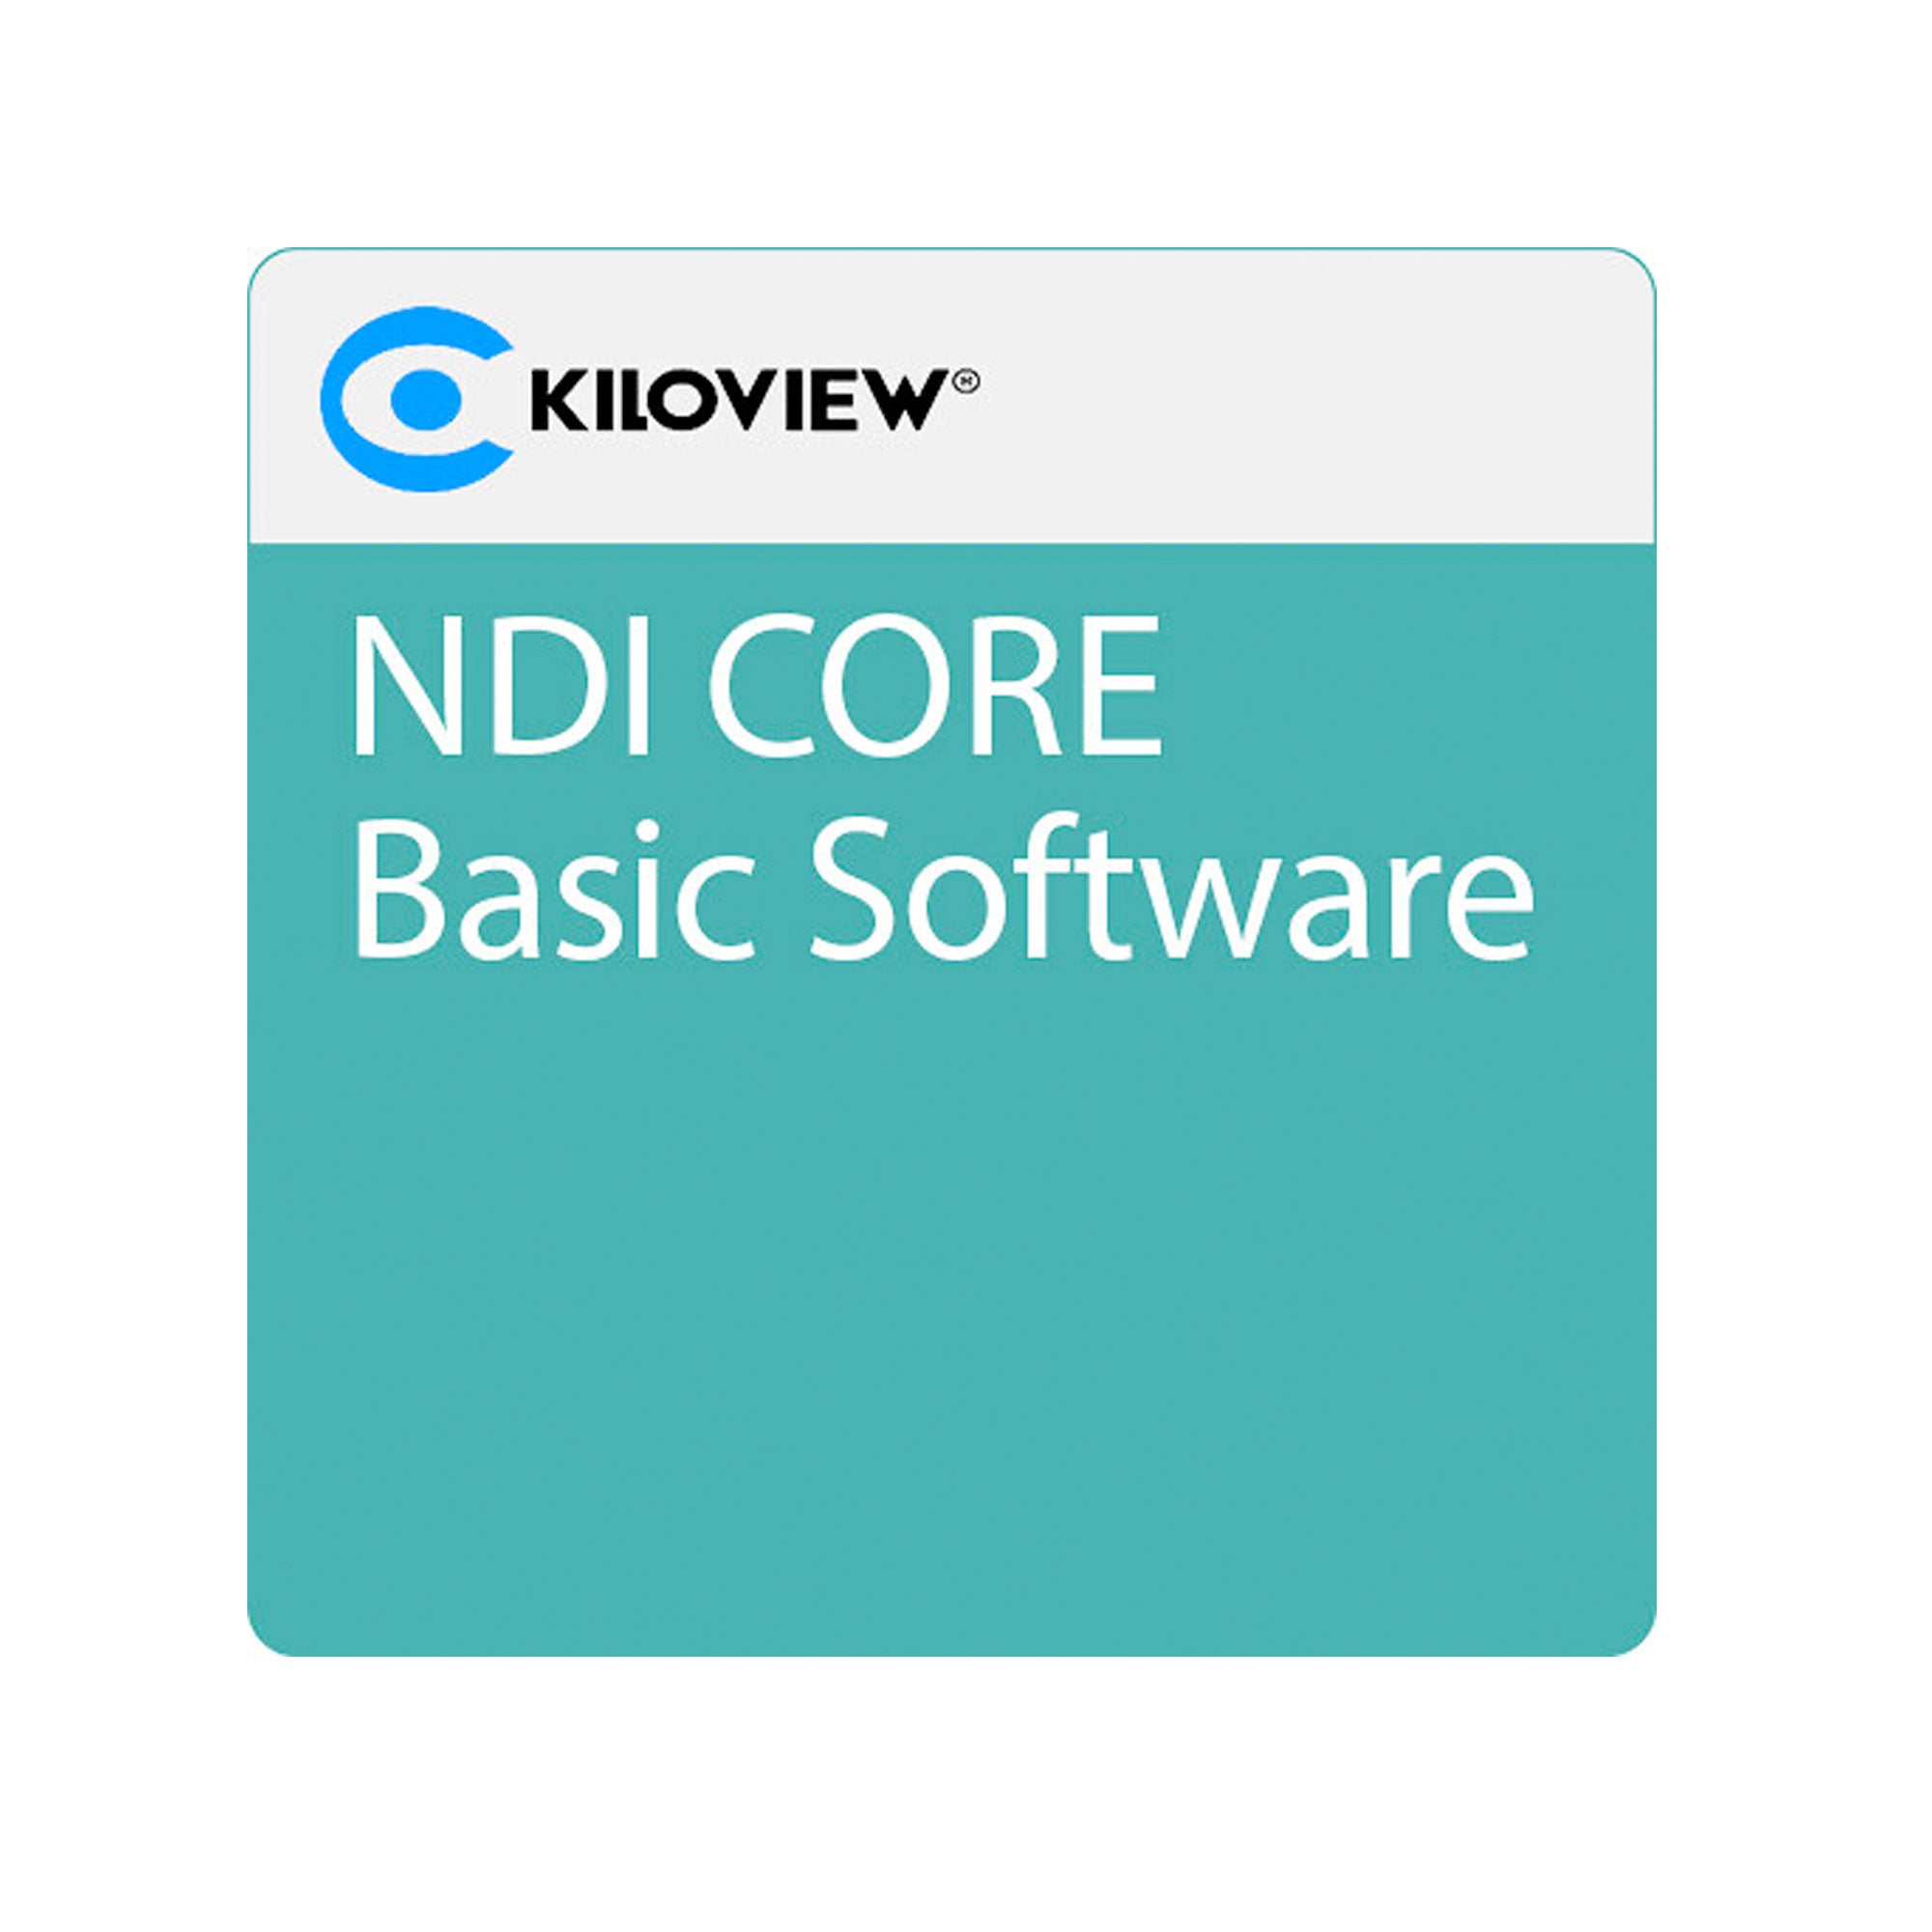 Kiloview NDI CORE Basic software